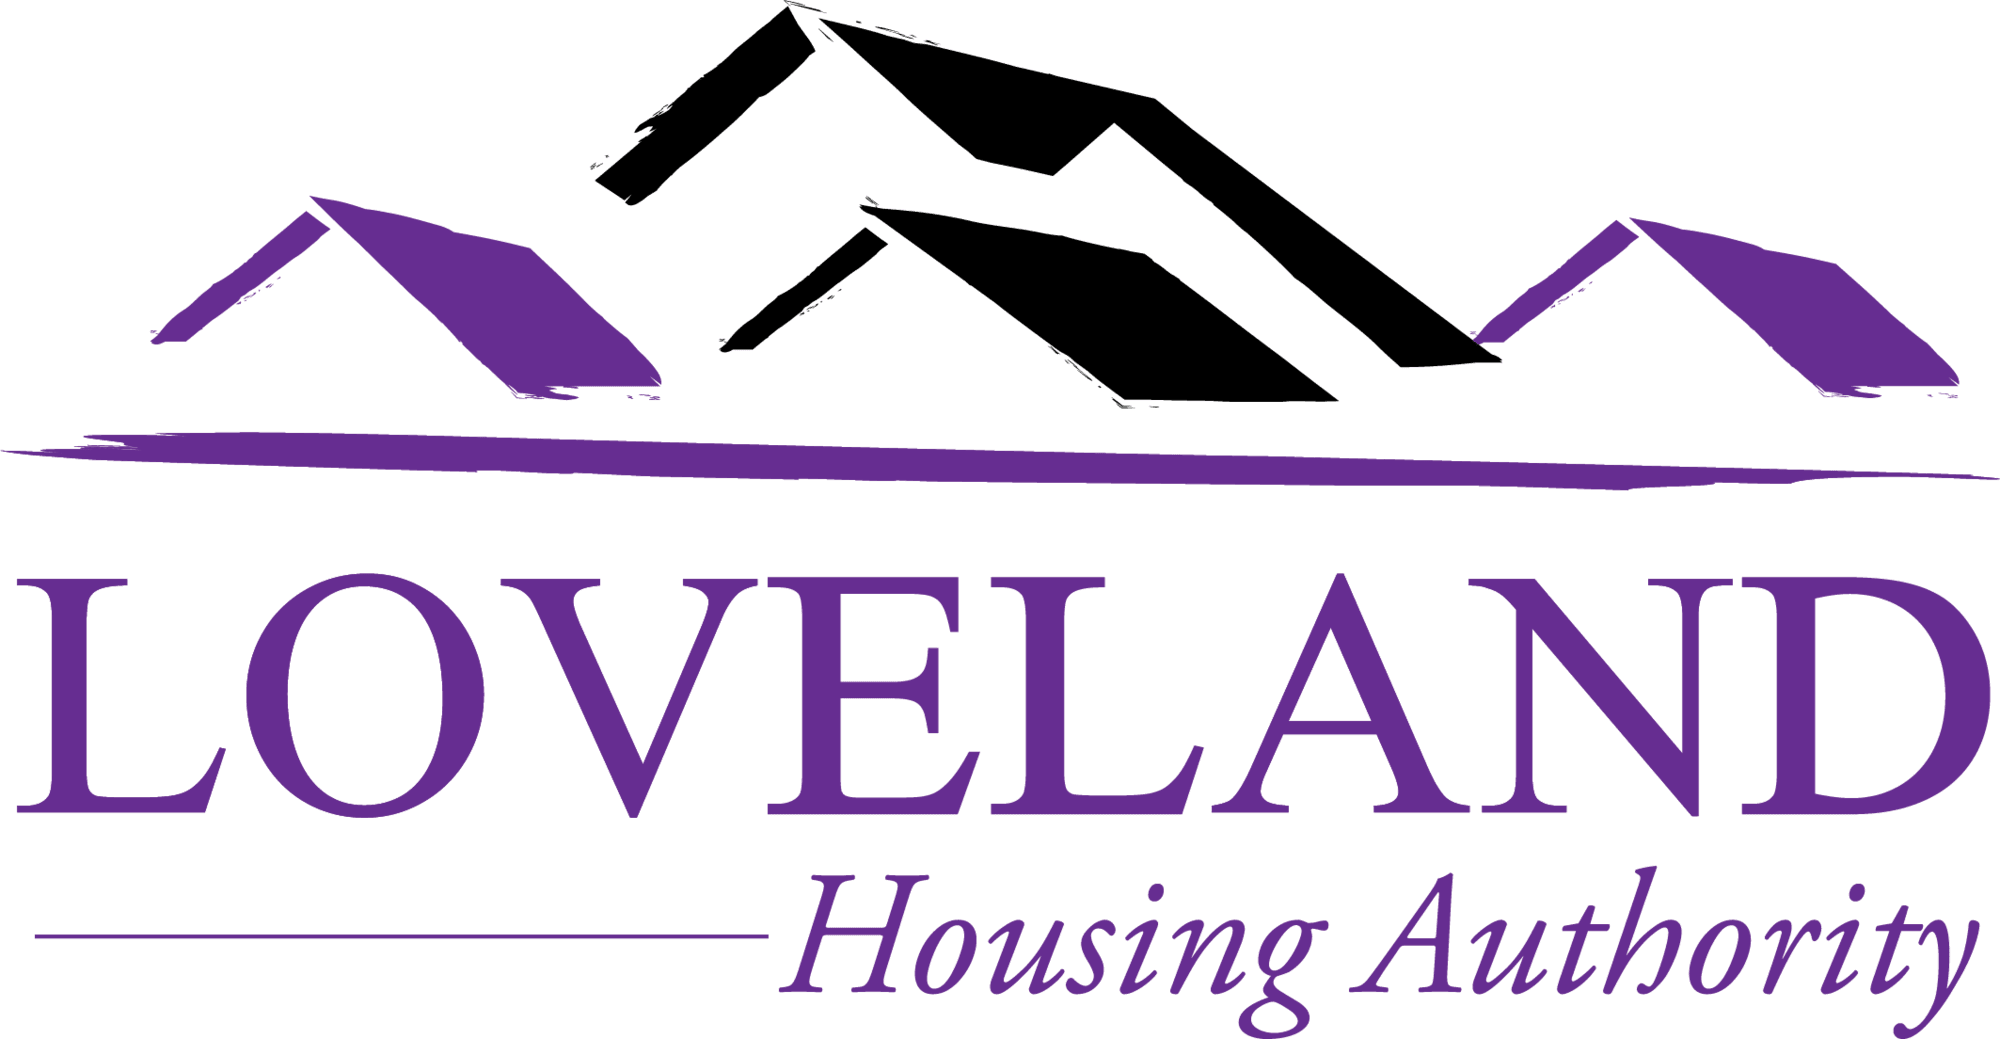 Loveland Housing Authority Logo